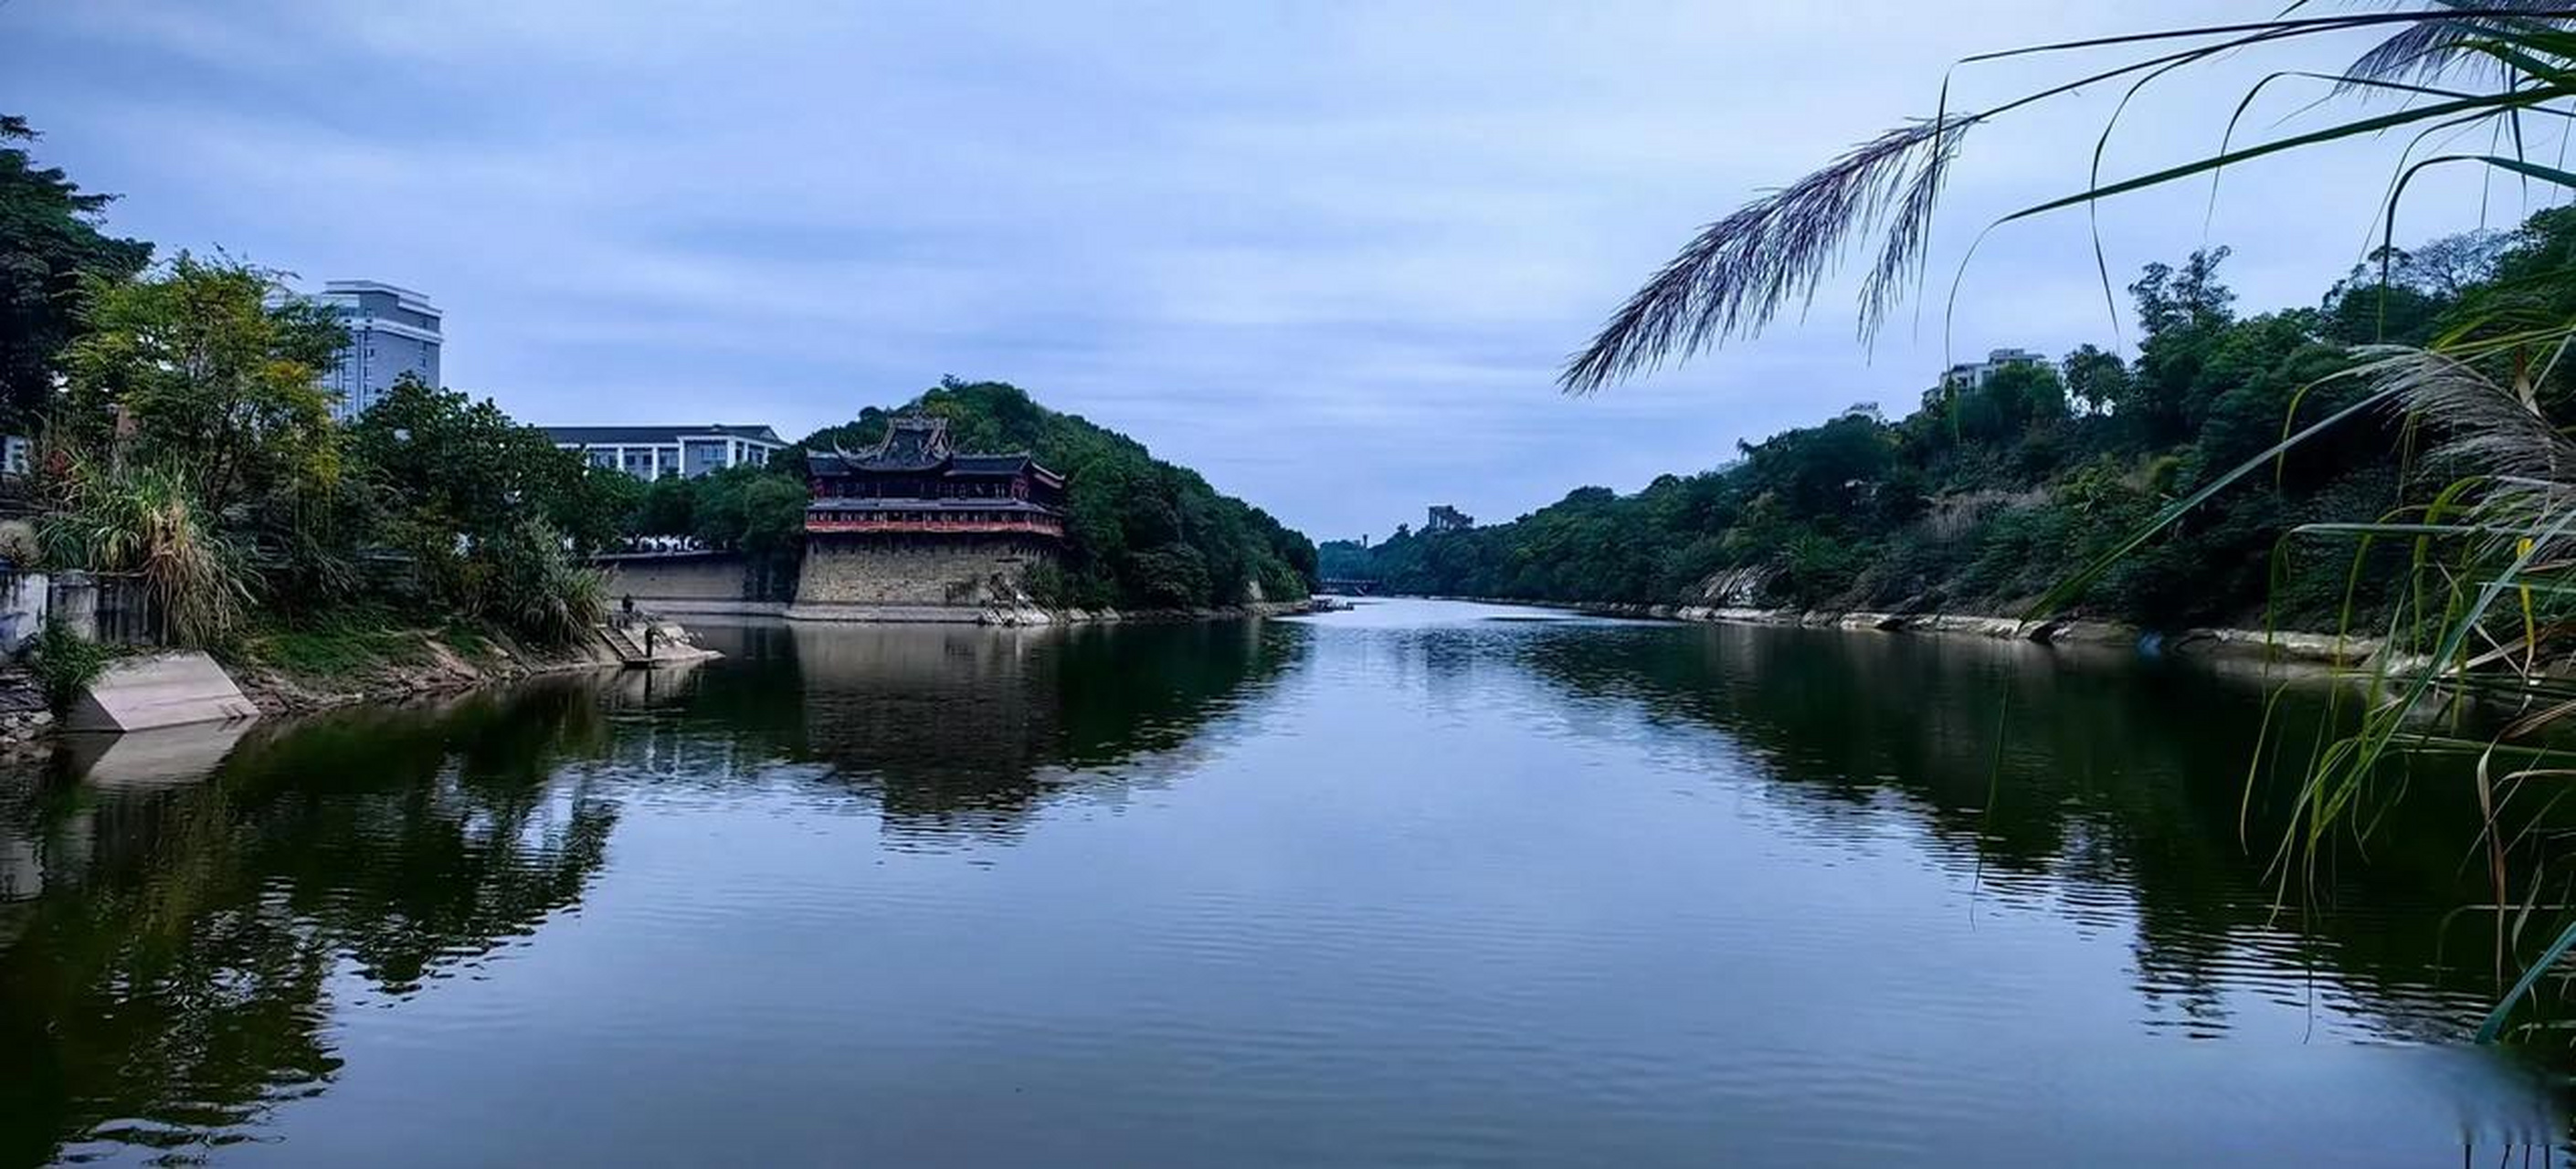 分享美的瞬间家乡自贡的母亲河—釜溪河畔的美丽风光!